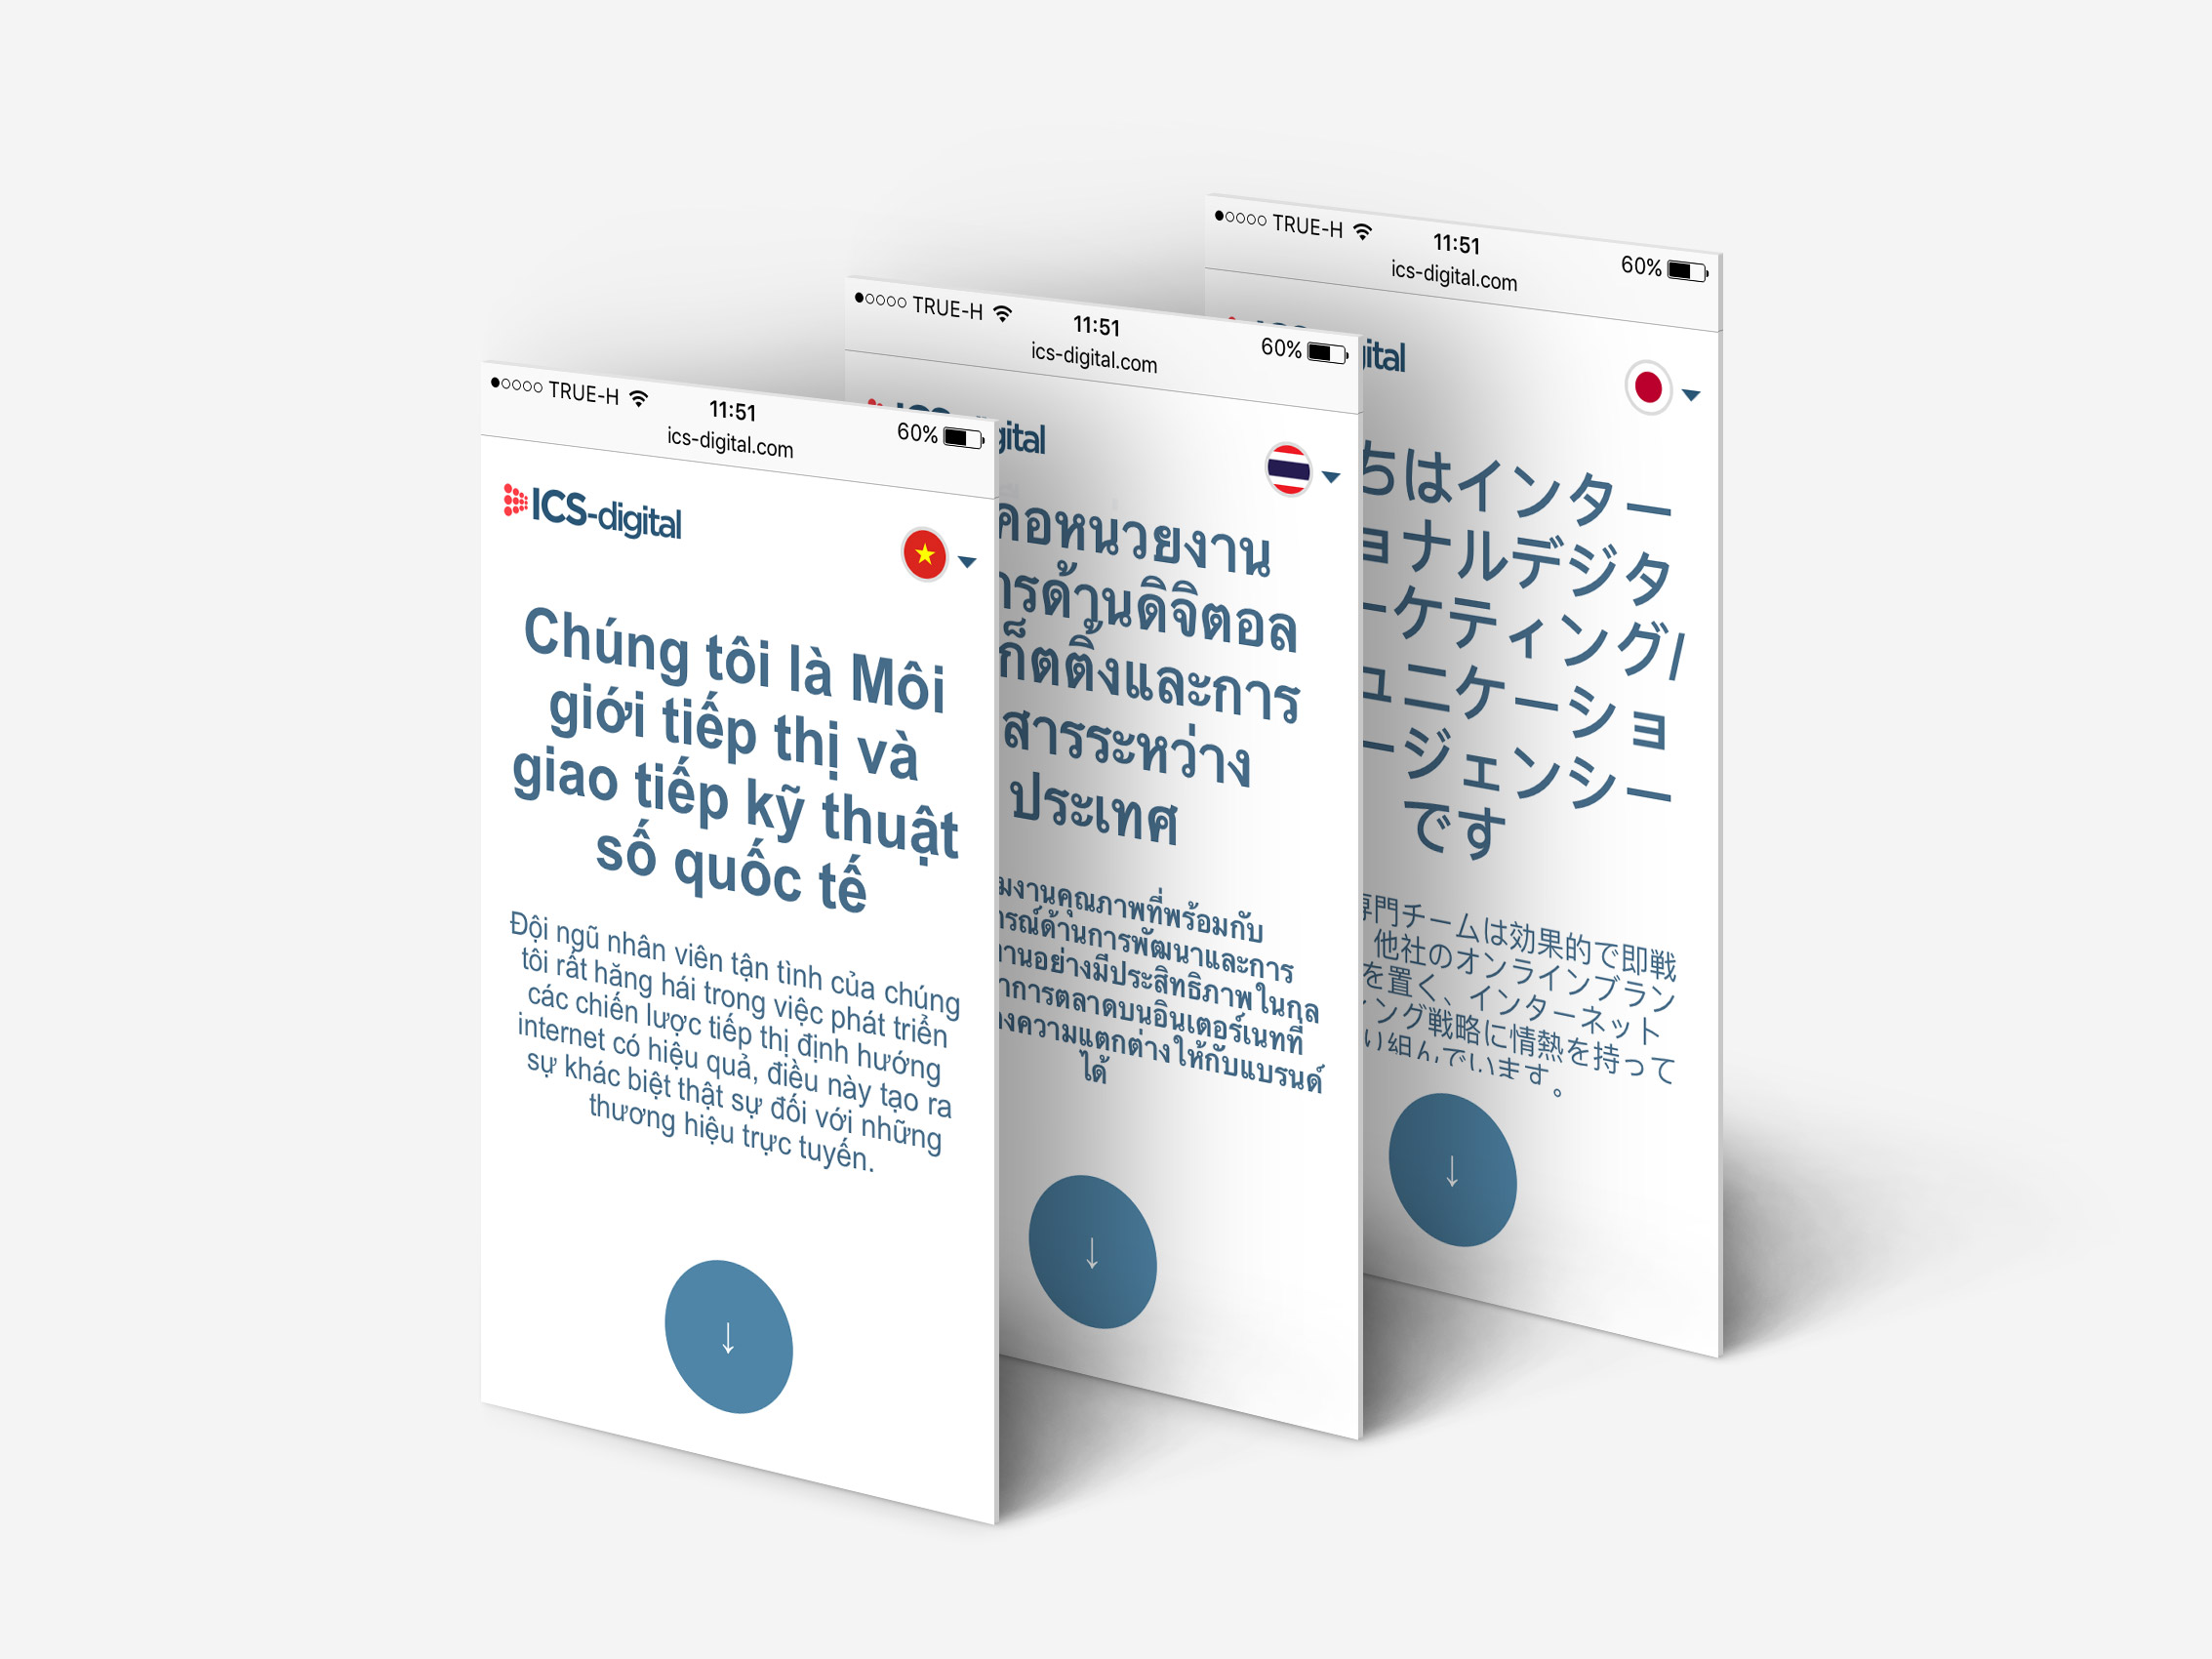 Obsah stránky ICS-digital lokalizovaný do ázijských jazykov | BOLD